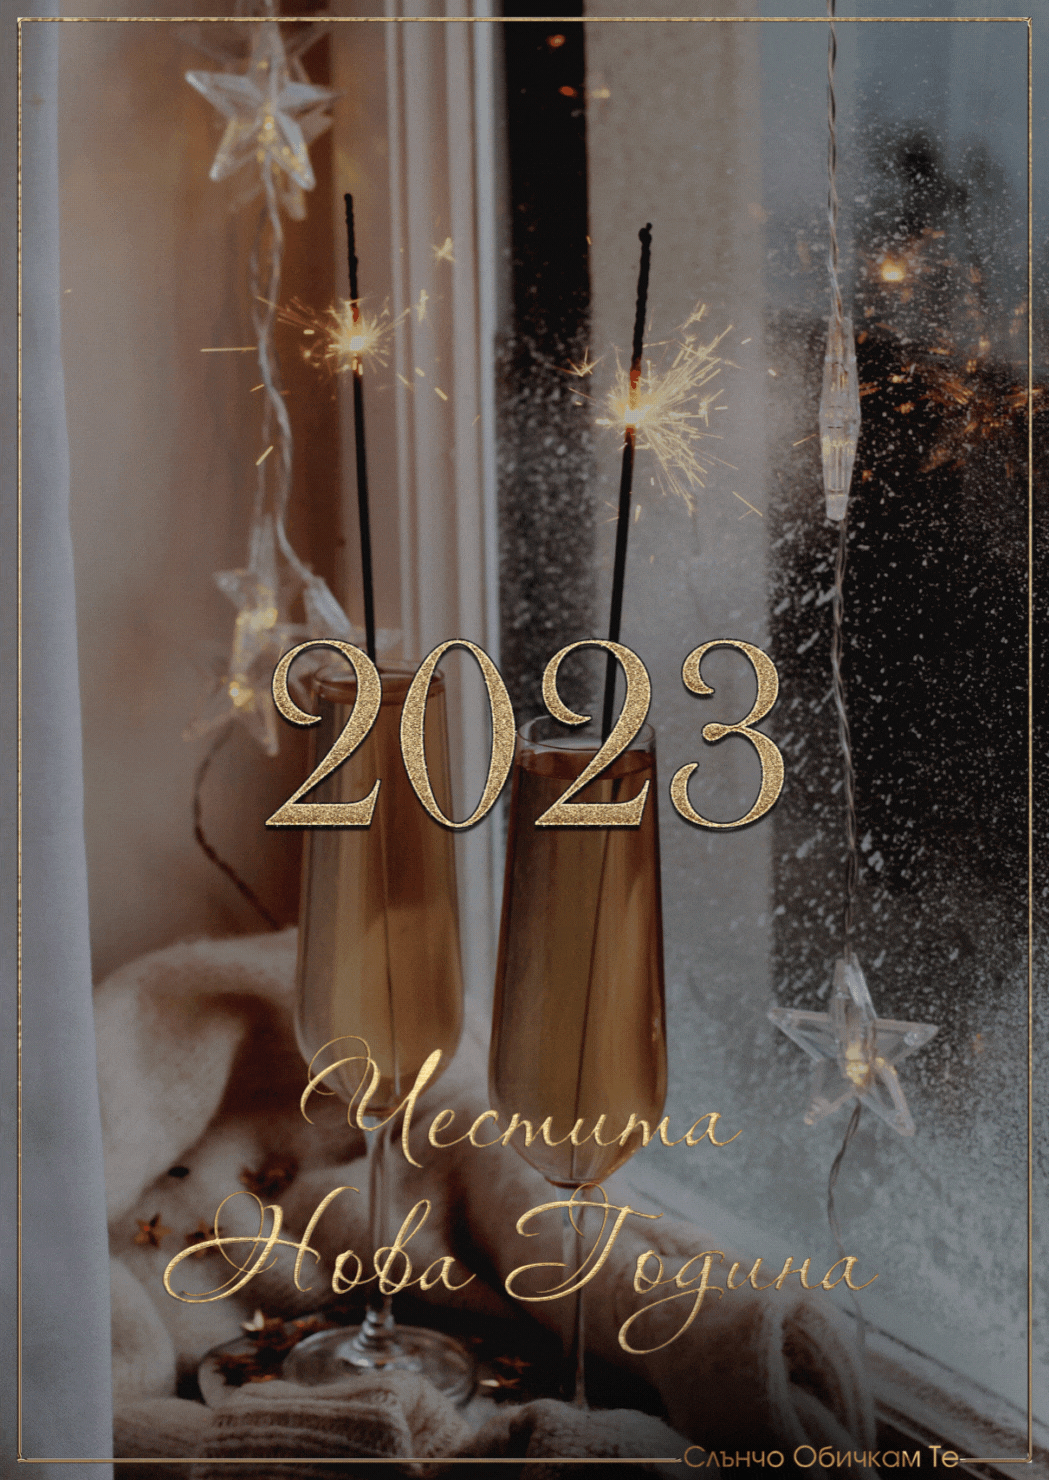 Новогодишна картичка 2023 - честита нова година, 2023, за много години, картички за нова година, слънчо обичкам те, sluncho